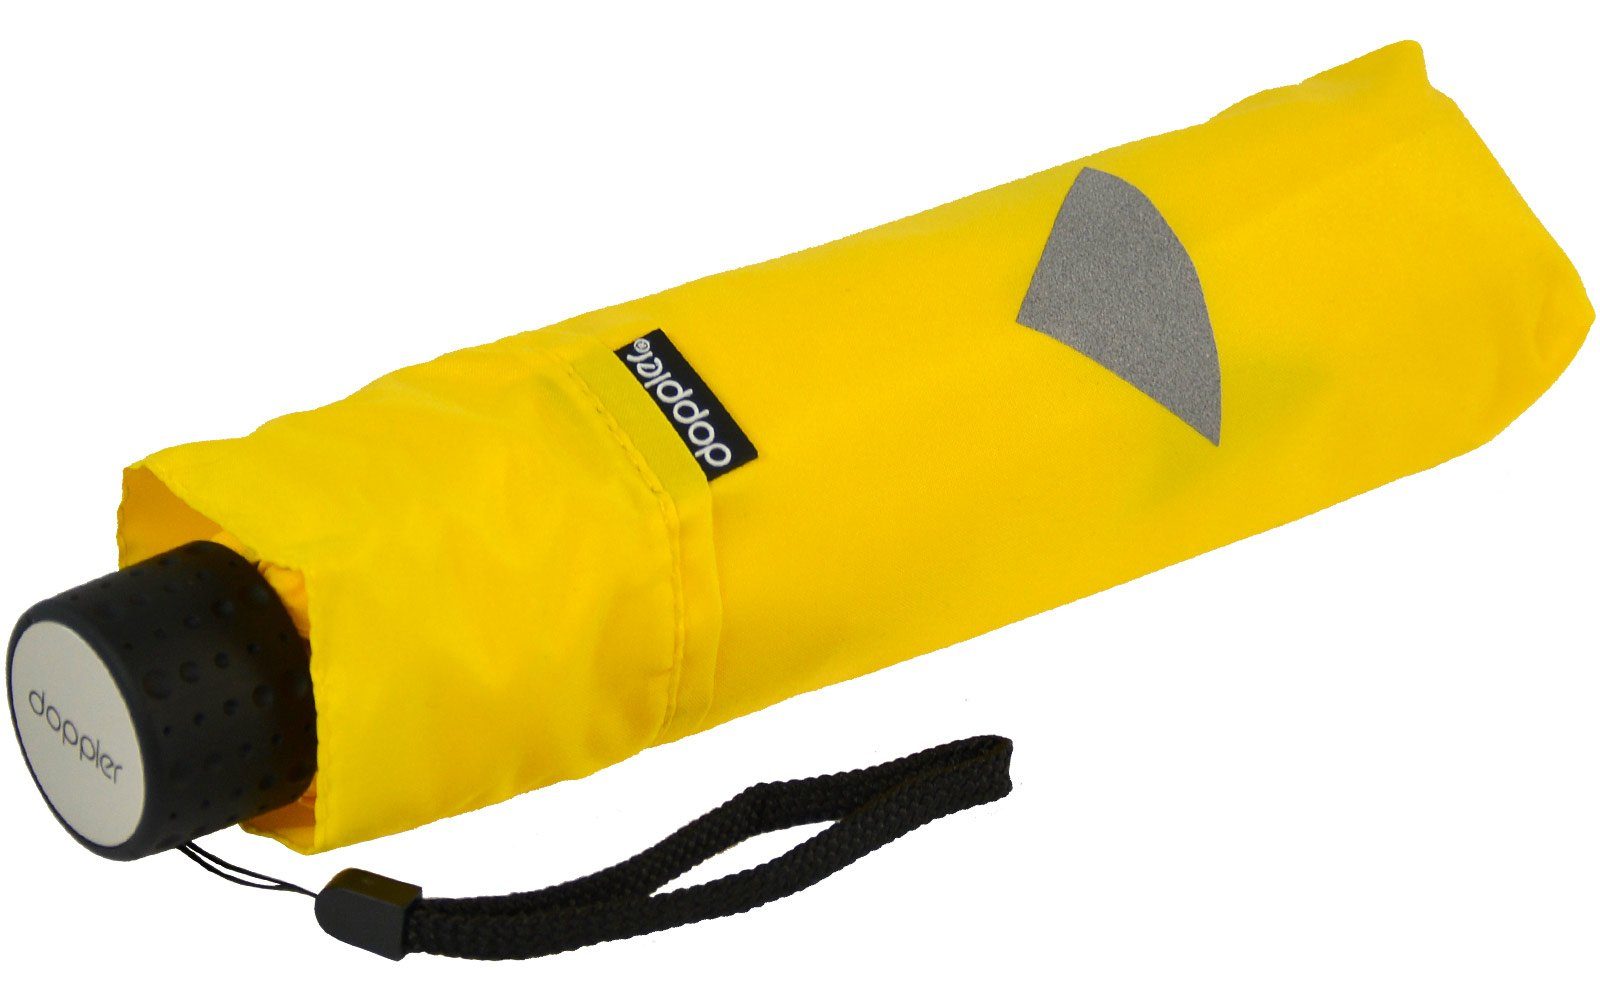 gelb Taschenregenschirm Havanna mit doppler® leichter kleiner, reflektierenden Reflex, Kinderschirm Kids Aufdrucken Super-Mini